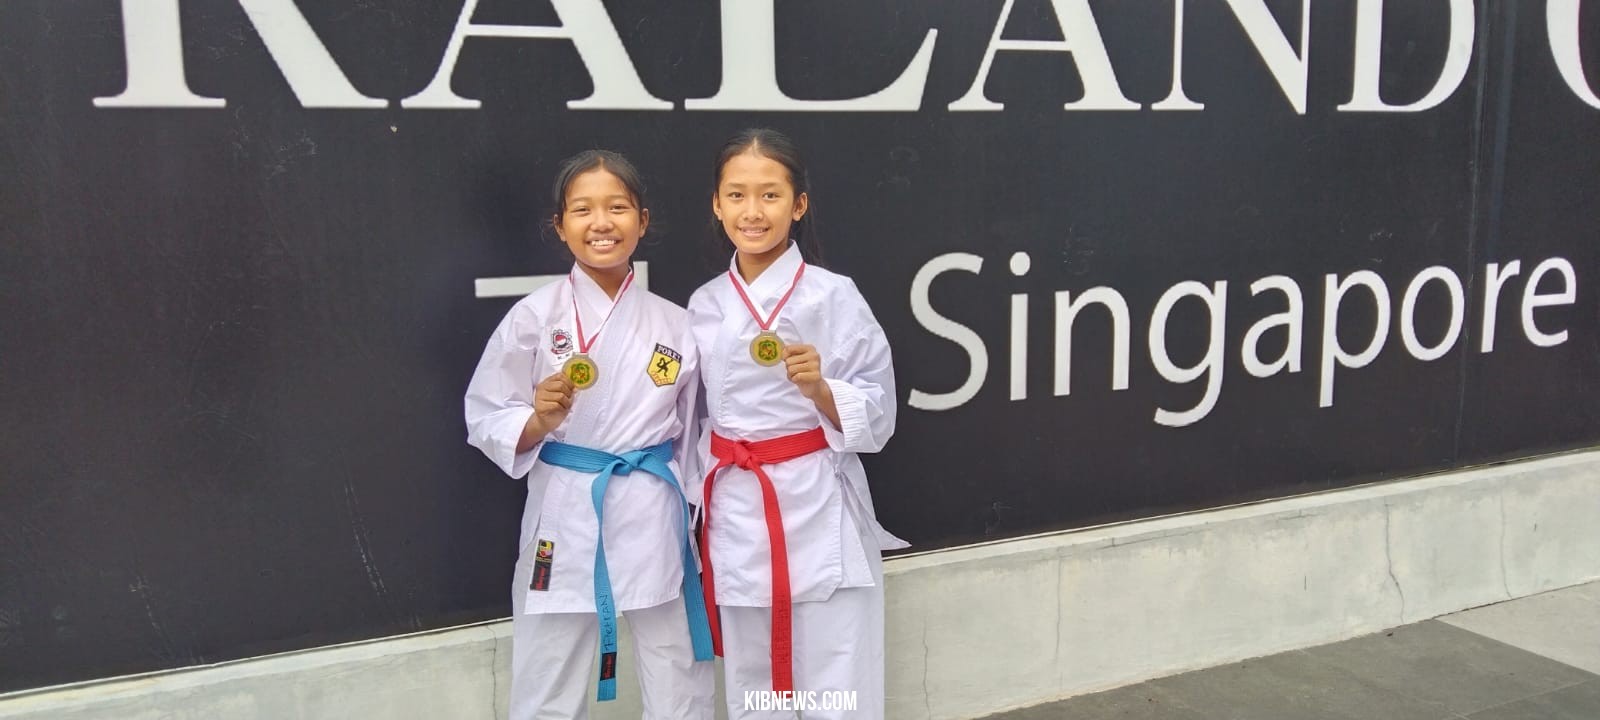 Anak Wartawan, Atlit KKI Medan Dinara & Dian Silaen Kembali Raih Medali Perak 